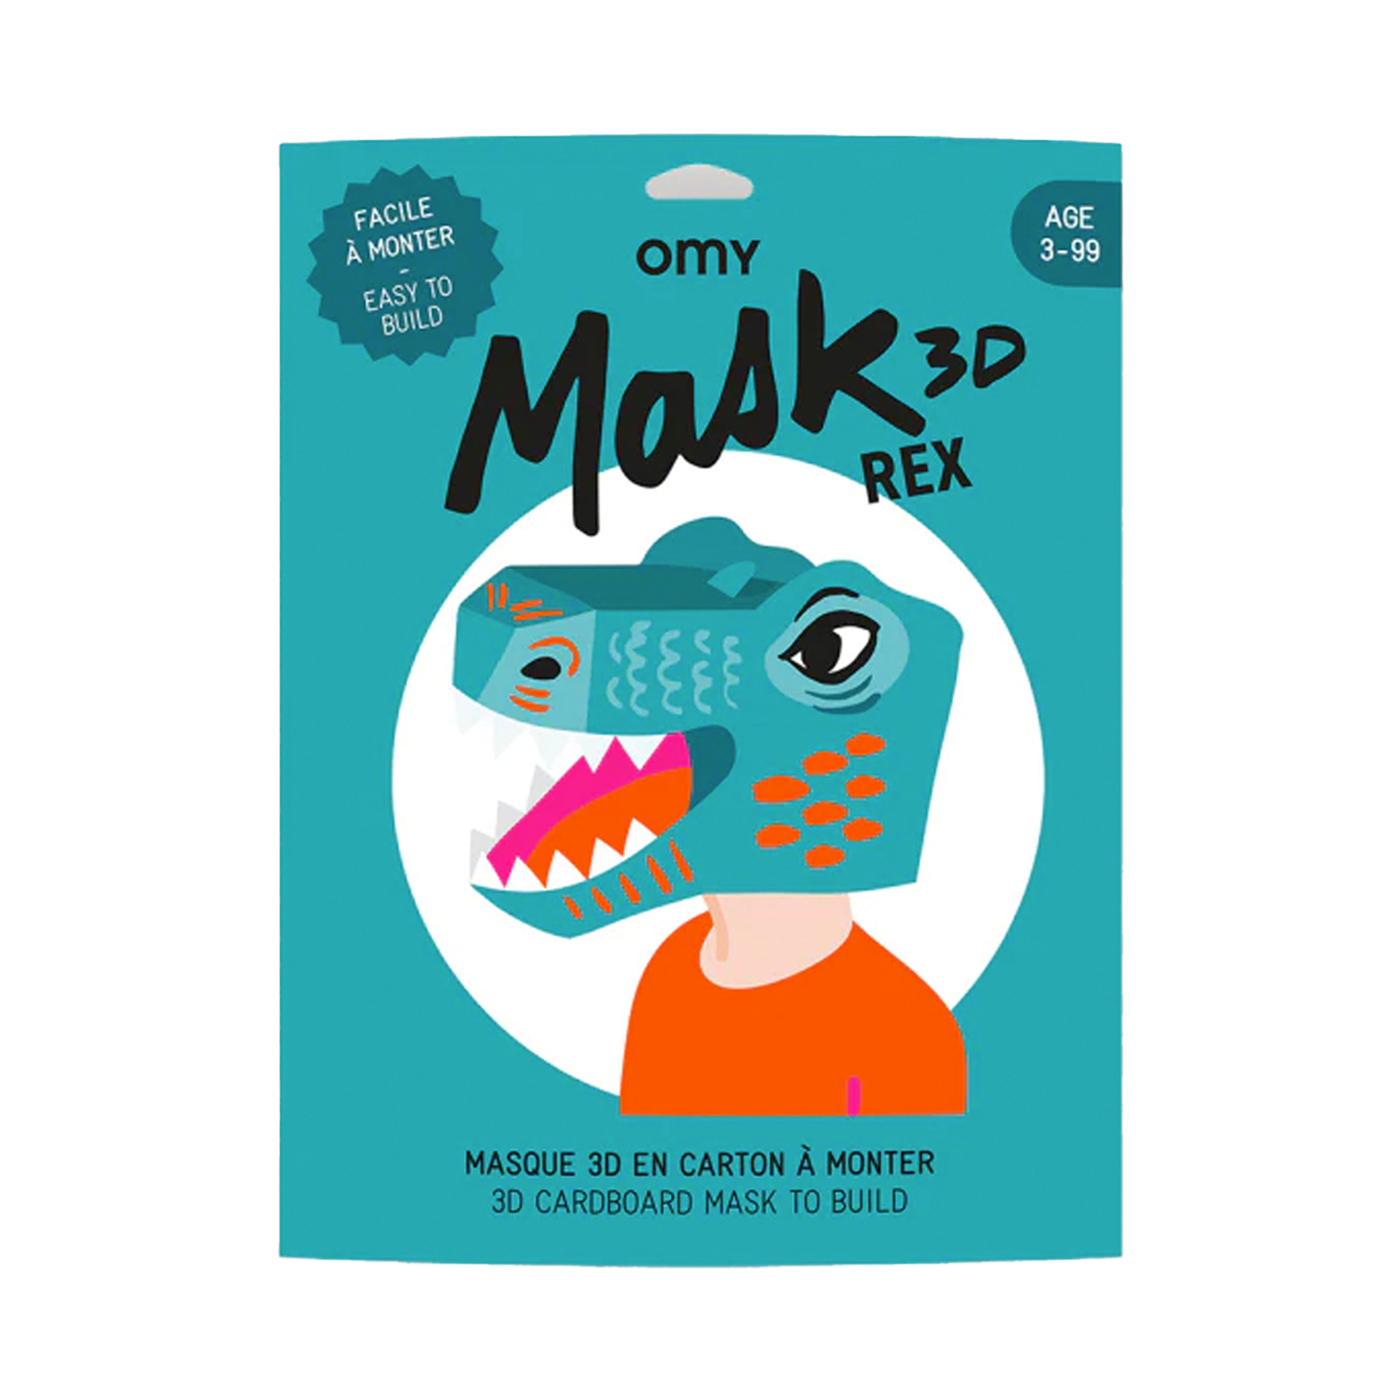  Omy 3D Mask Rex